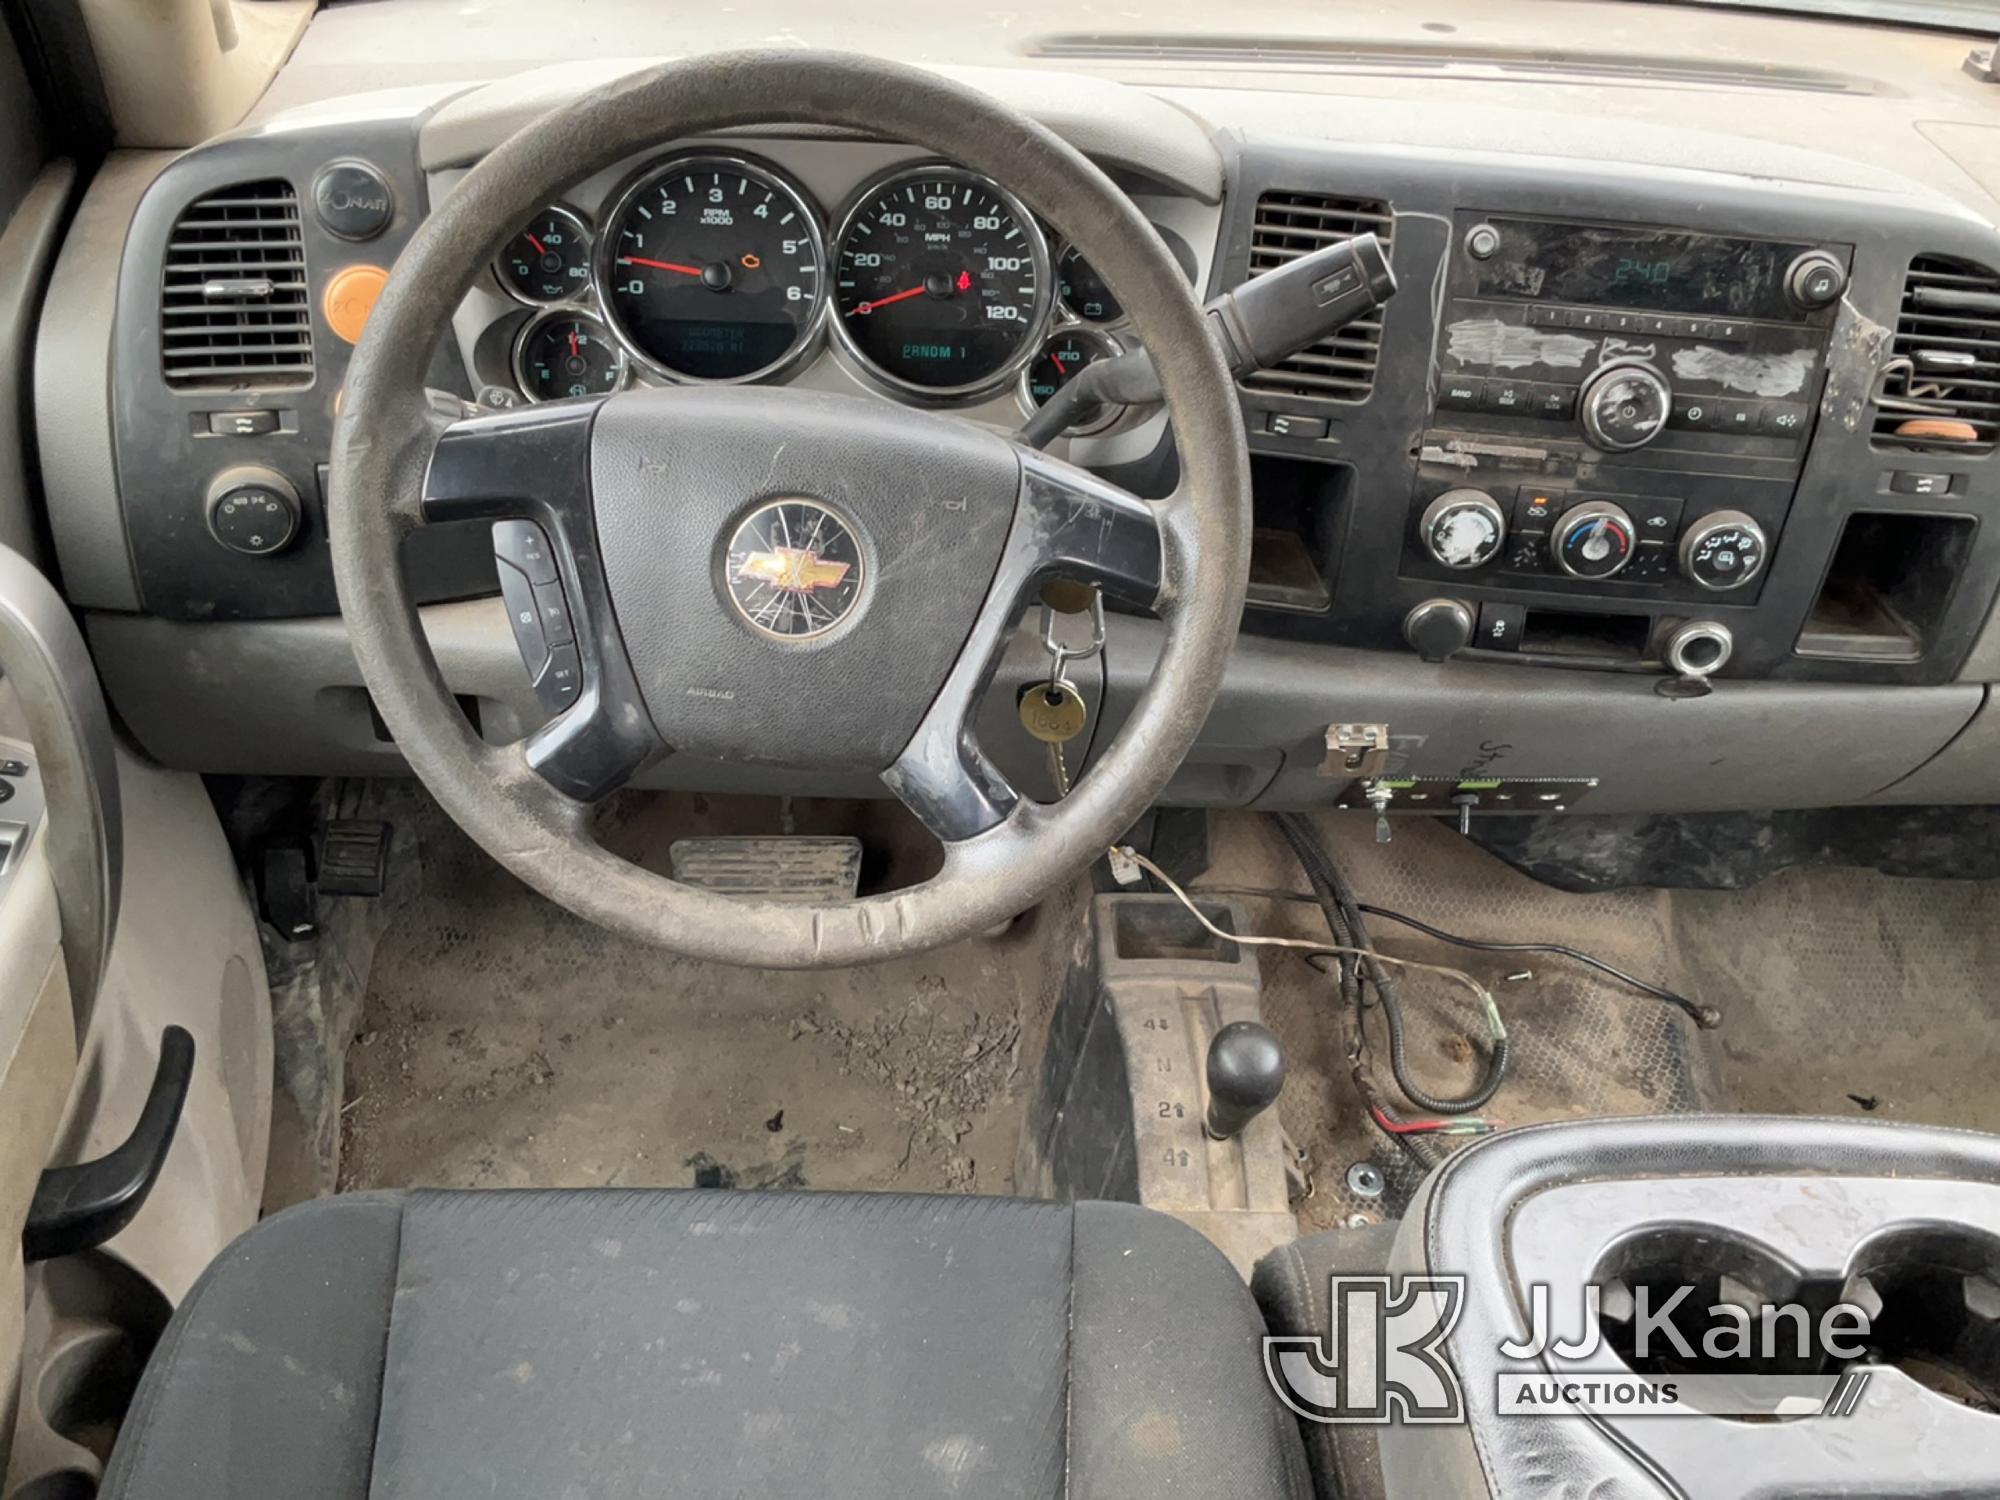 (South Beloit, IL) 2014 Chevrolet Silverado 2500HD 4x4 Crew-Cab Flatbed/Service Truck Runs & Moves)